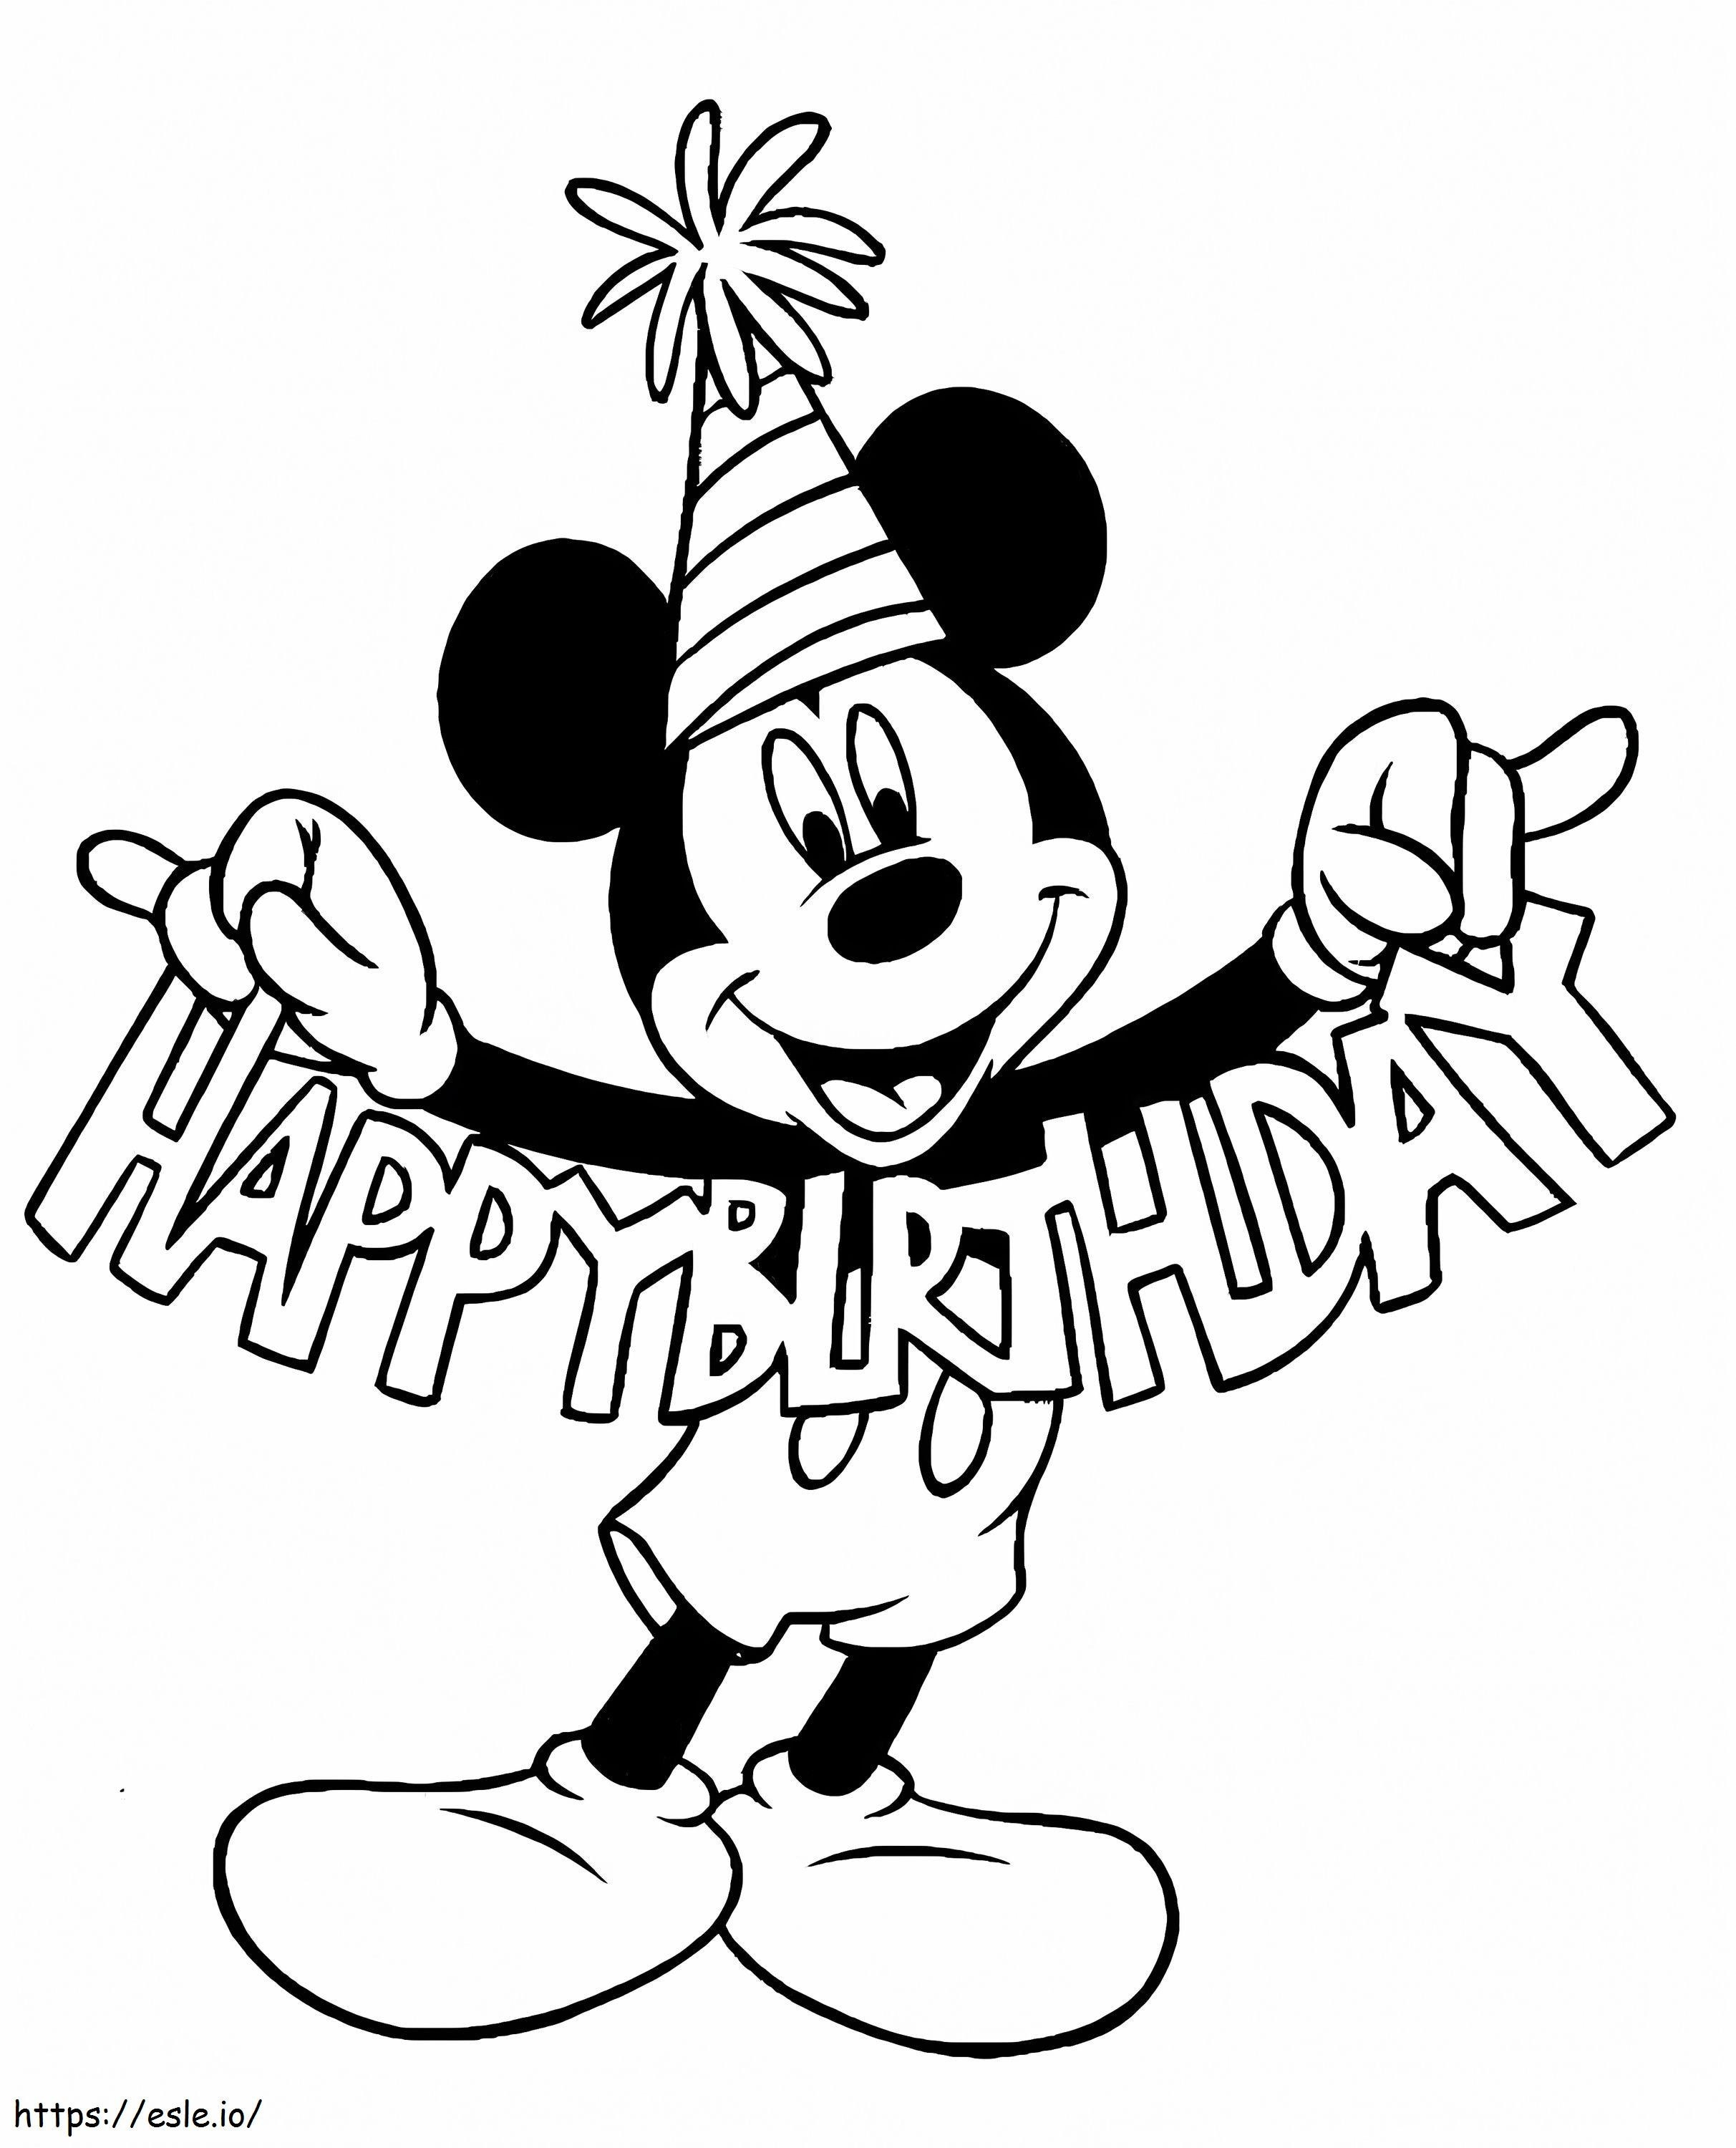 Doğum Günün Kutlu Olsun Mickey Mouse boyama